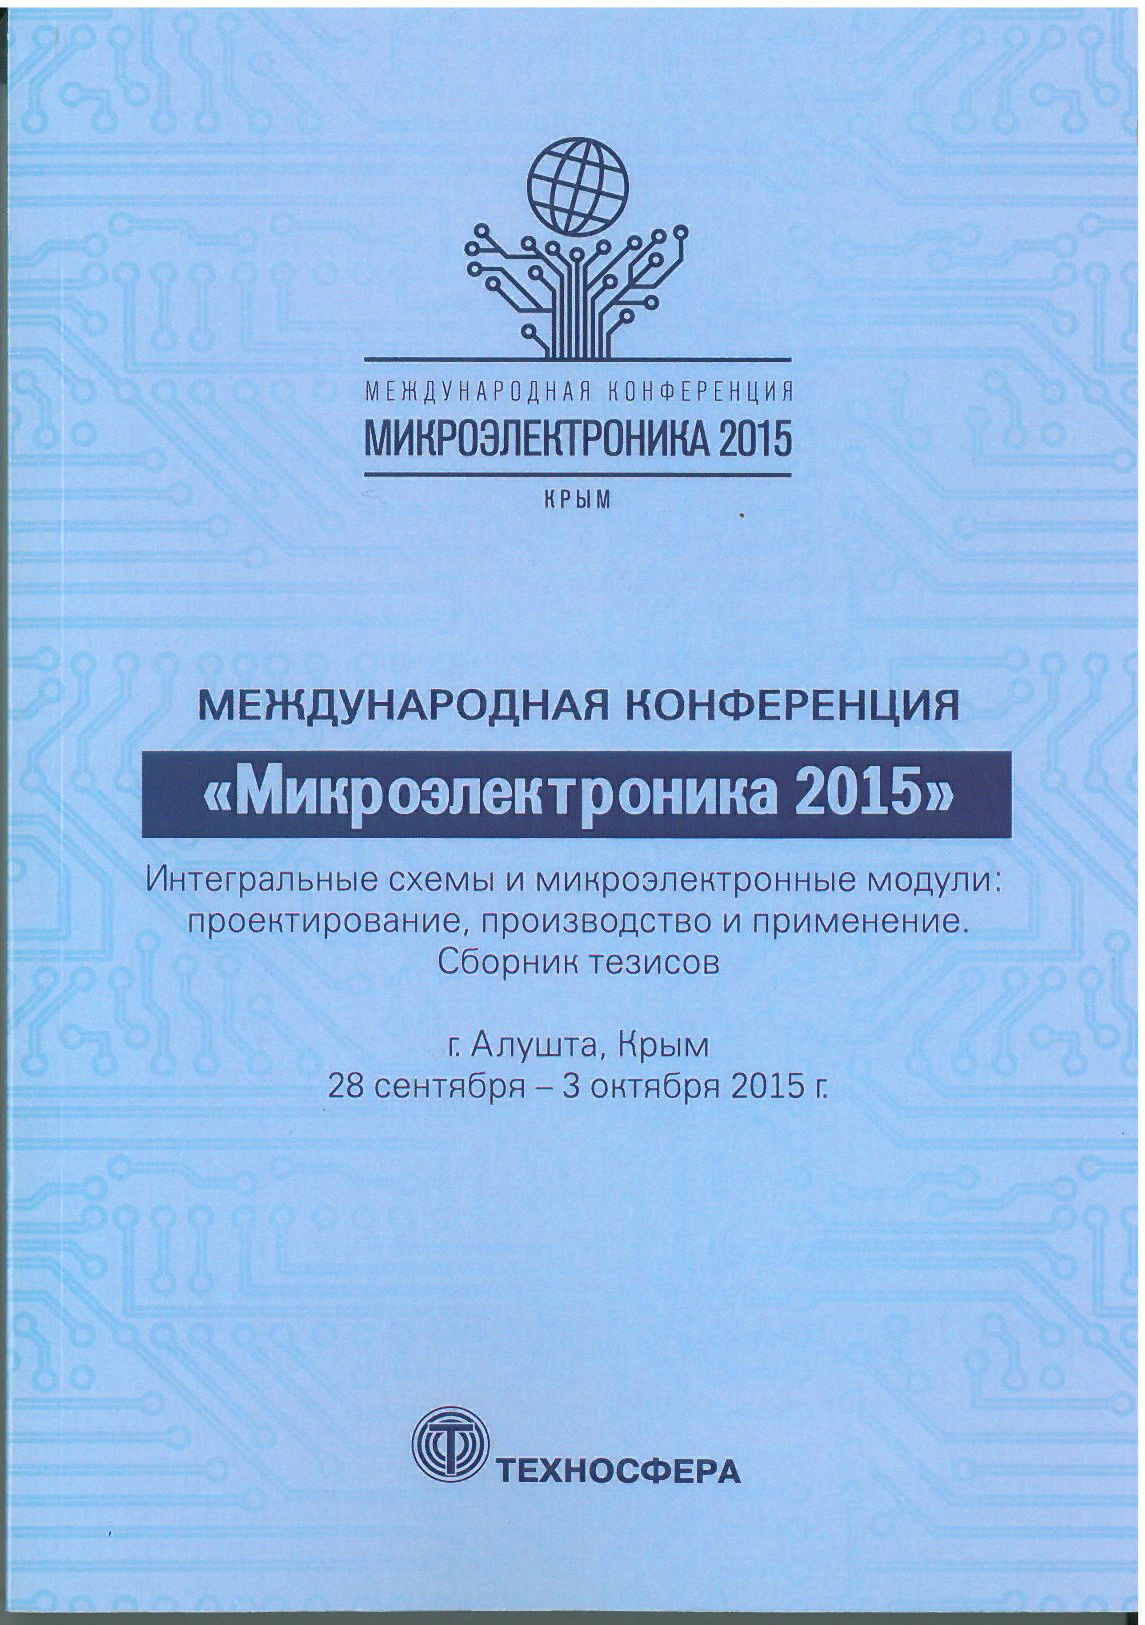 Международная конференция «Микроэлектроника 2015». Сборник тезисов. г.Алушта, Крым, 28 сентября - 3 октября 2015 г.